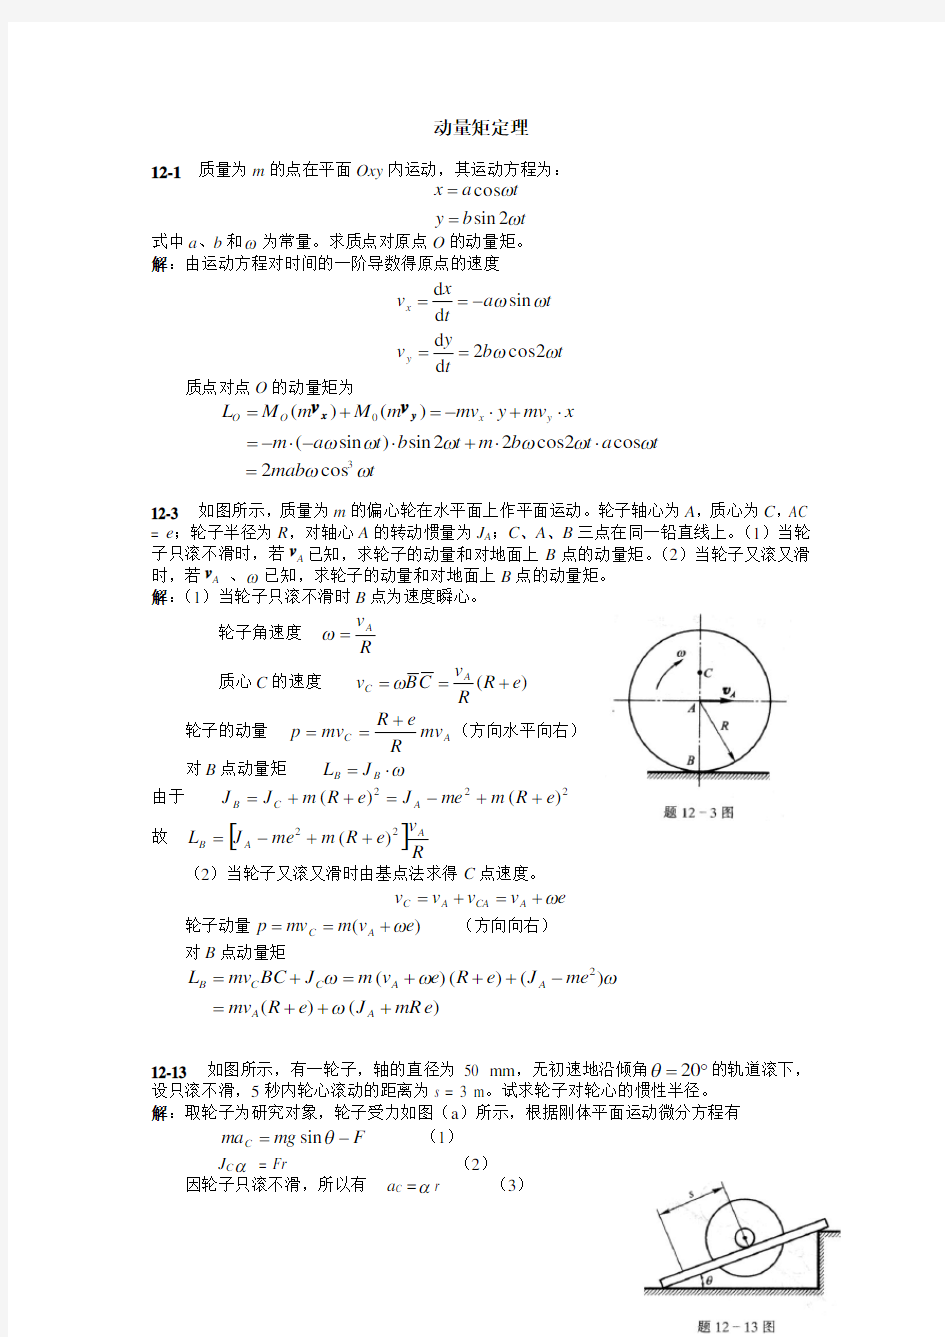 梁坤京理论力学第十二章动量矩定理课后